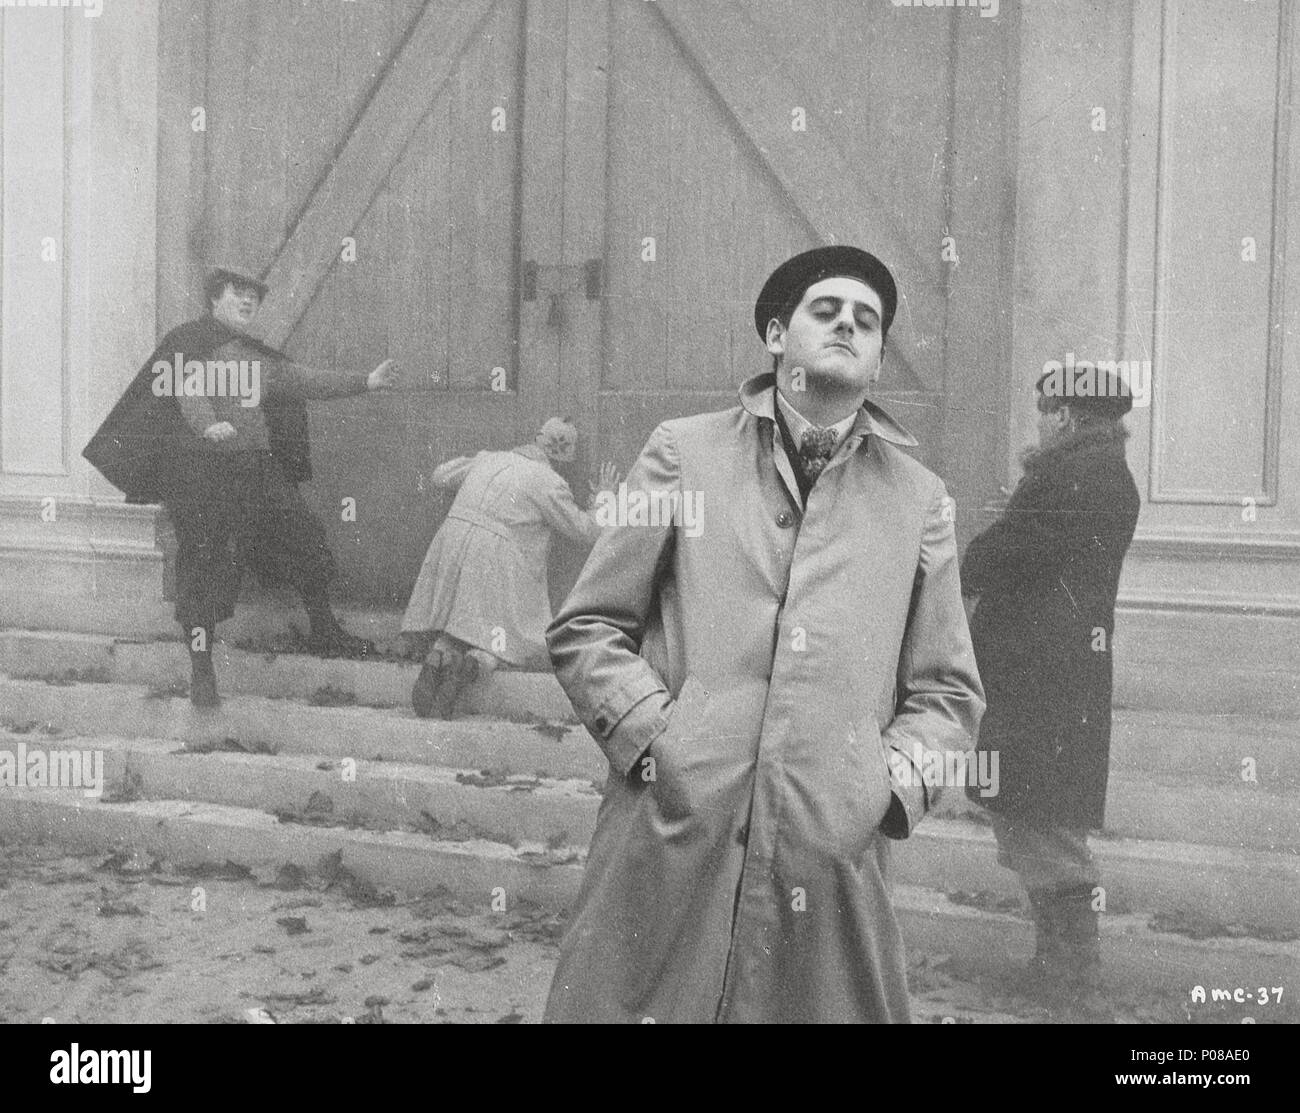 El título de la película original: Amarcord. Título en inglés: Amarcord. El director de cine: Federico Fellini. Año: 1973. Crédito: F.C. Roma/P.E.C.F.PARIS / Álbum Foto de stock